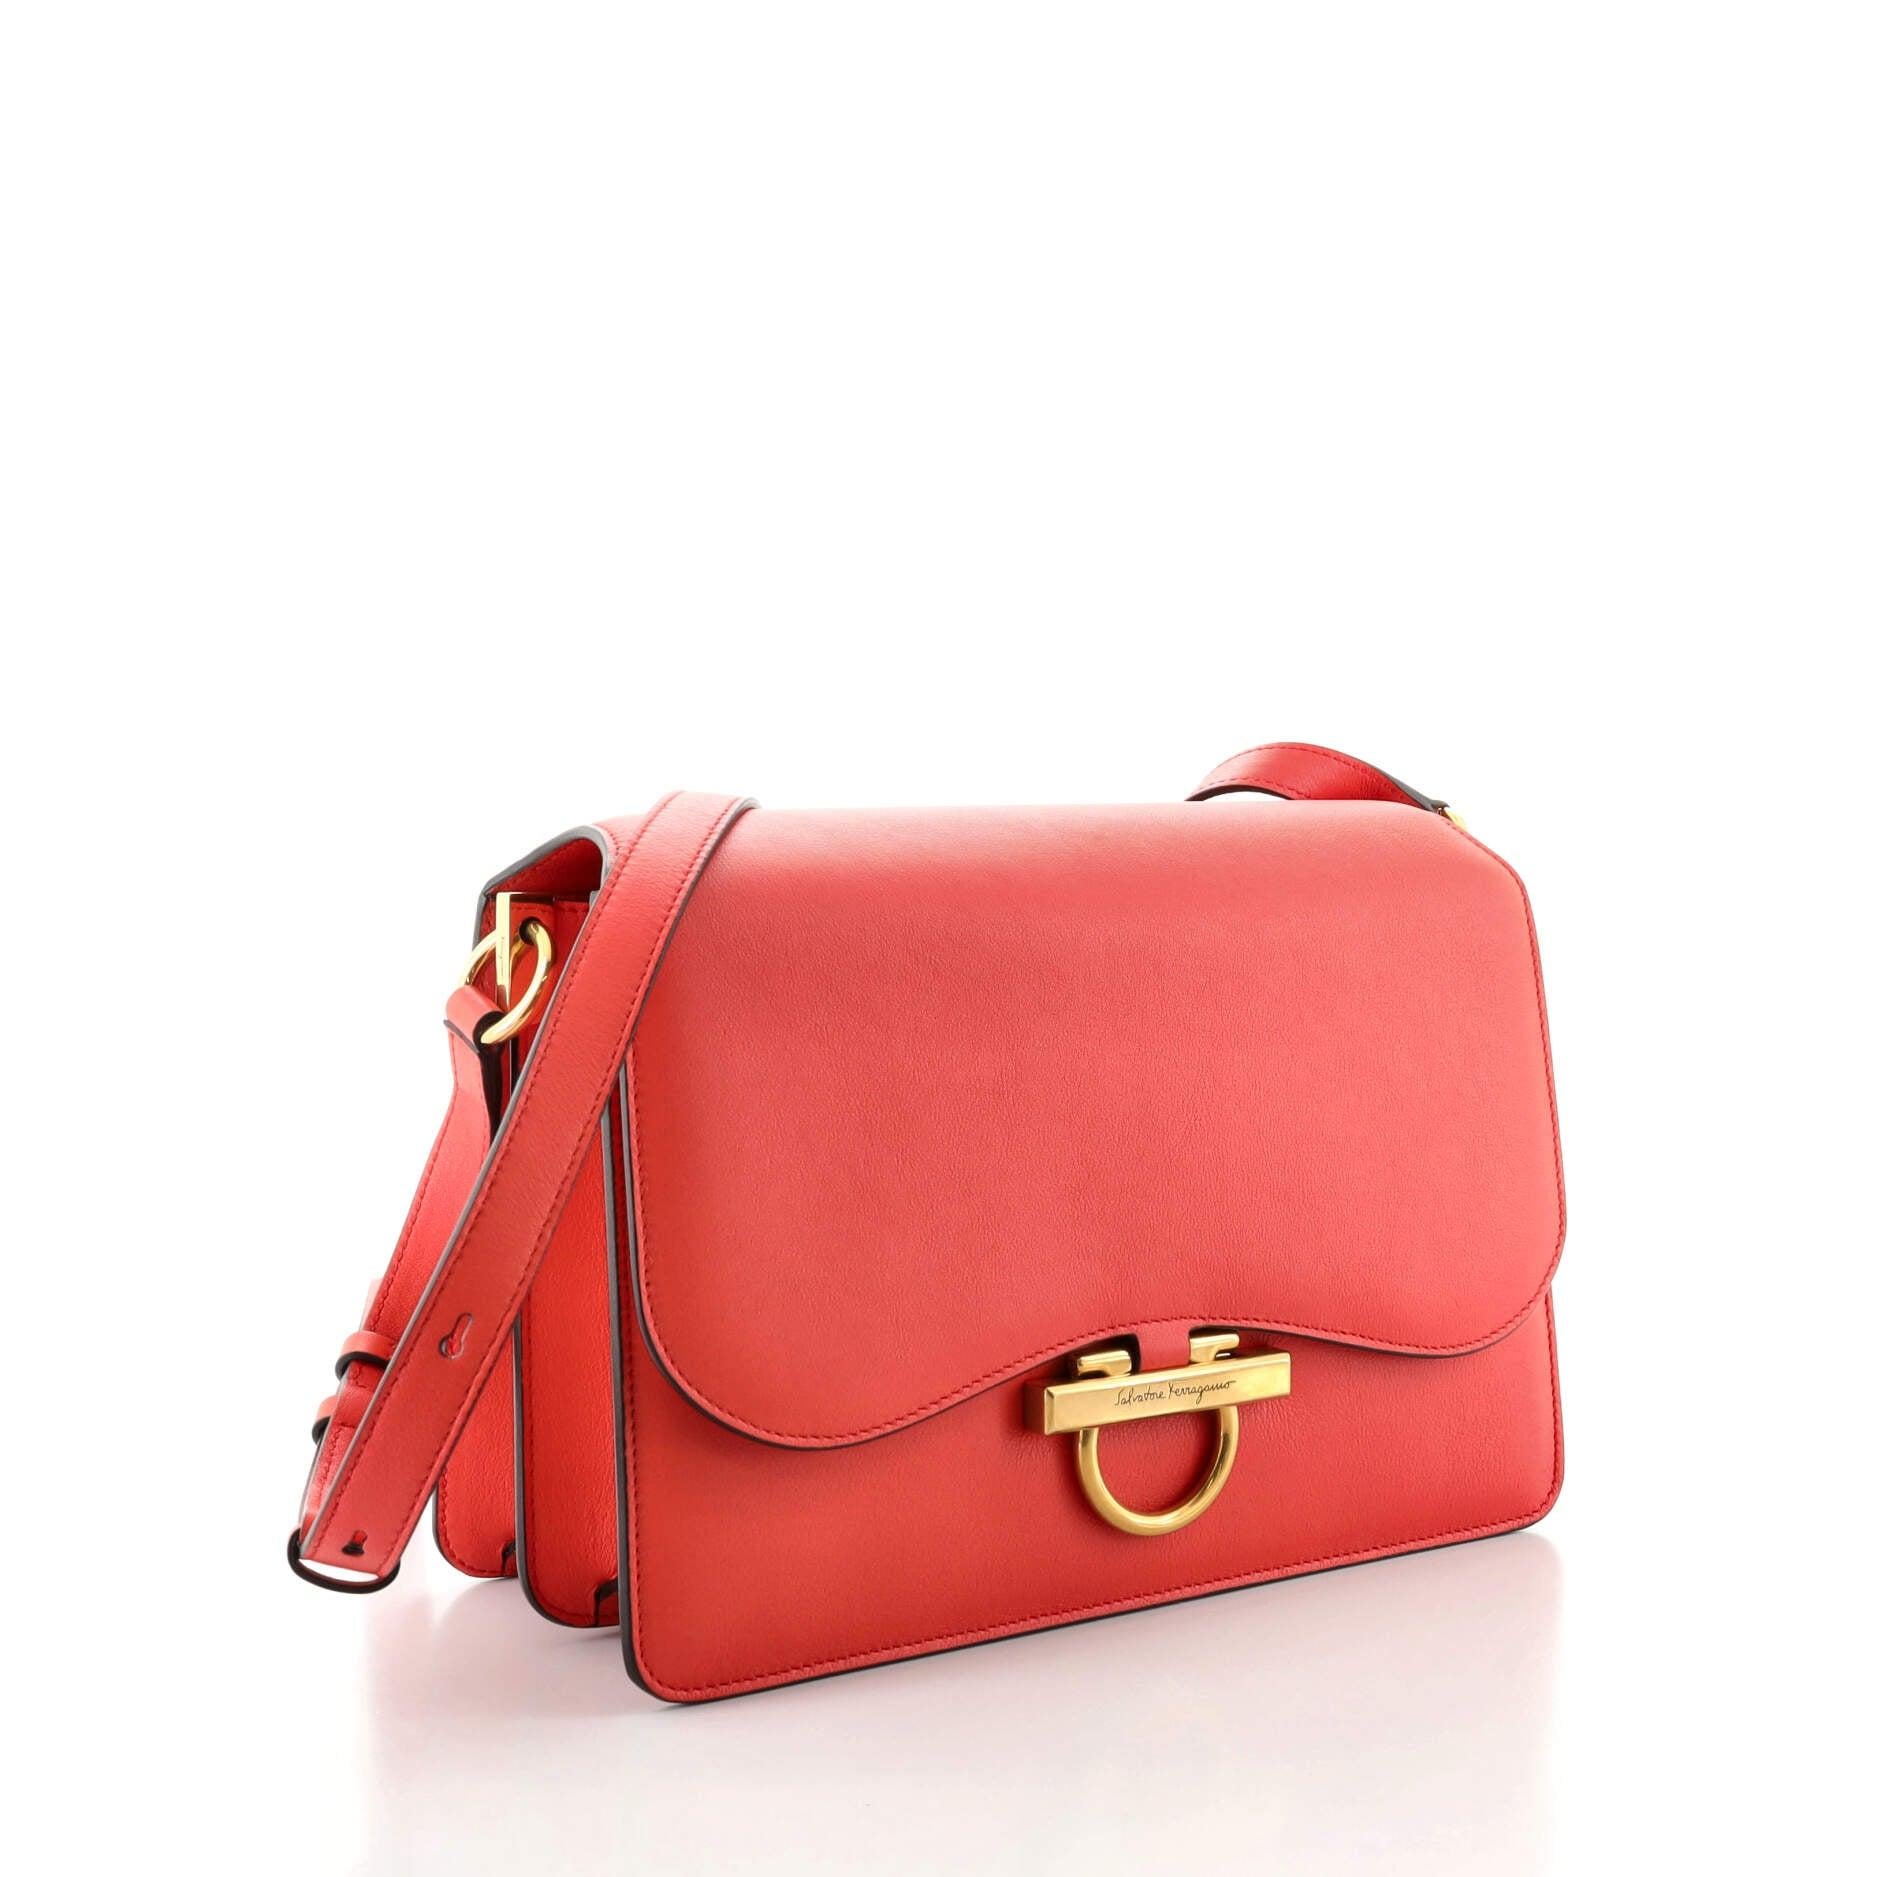 Red Salvatore Ferragamo Joanne Shoulder Bag Leather Large